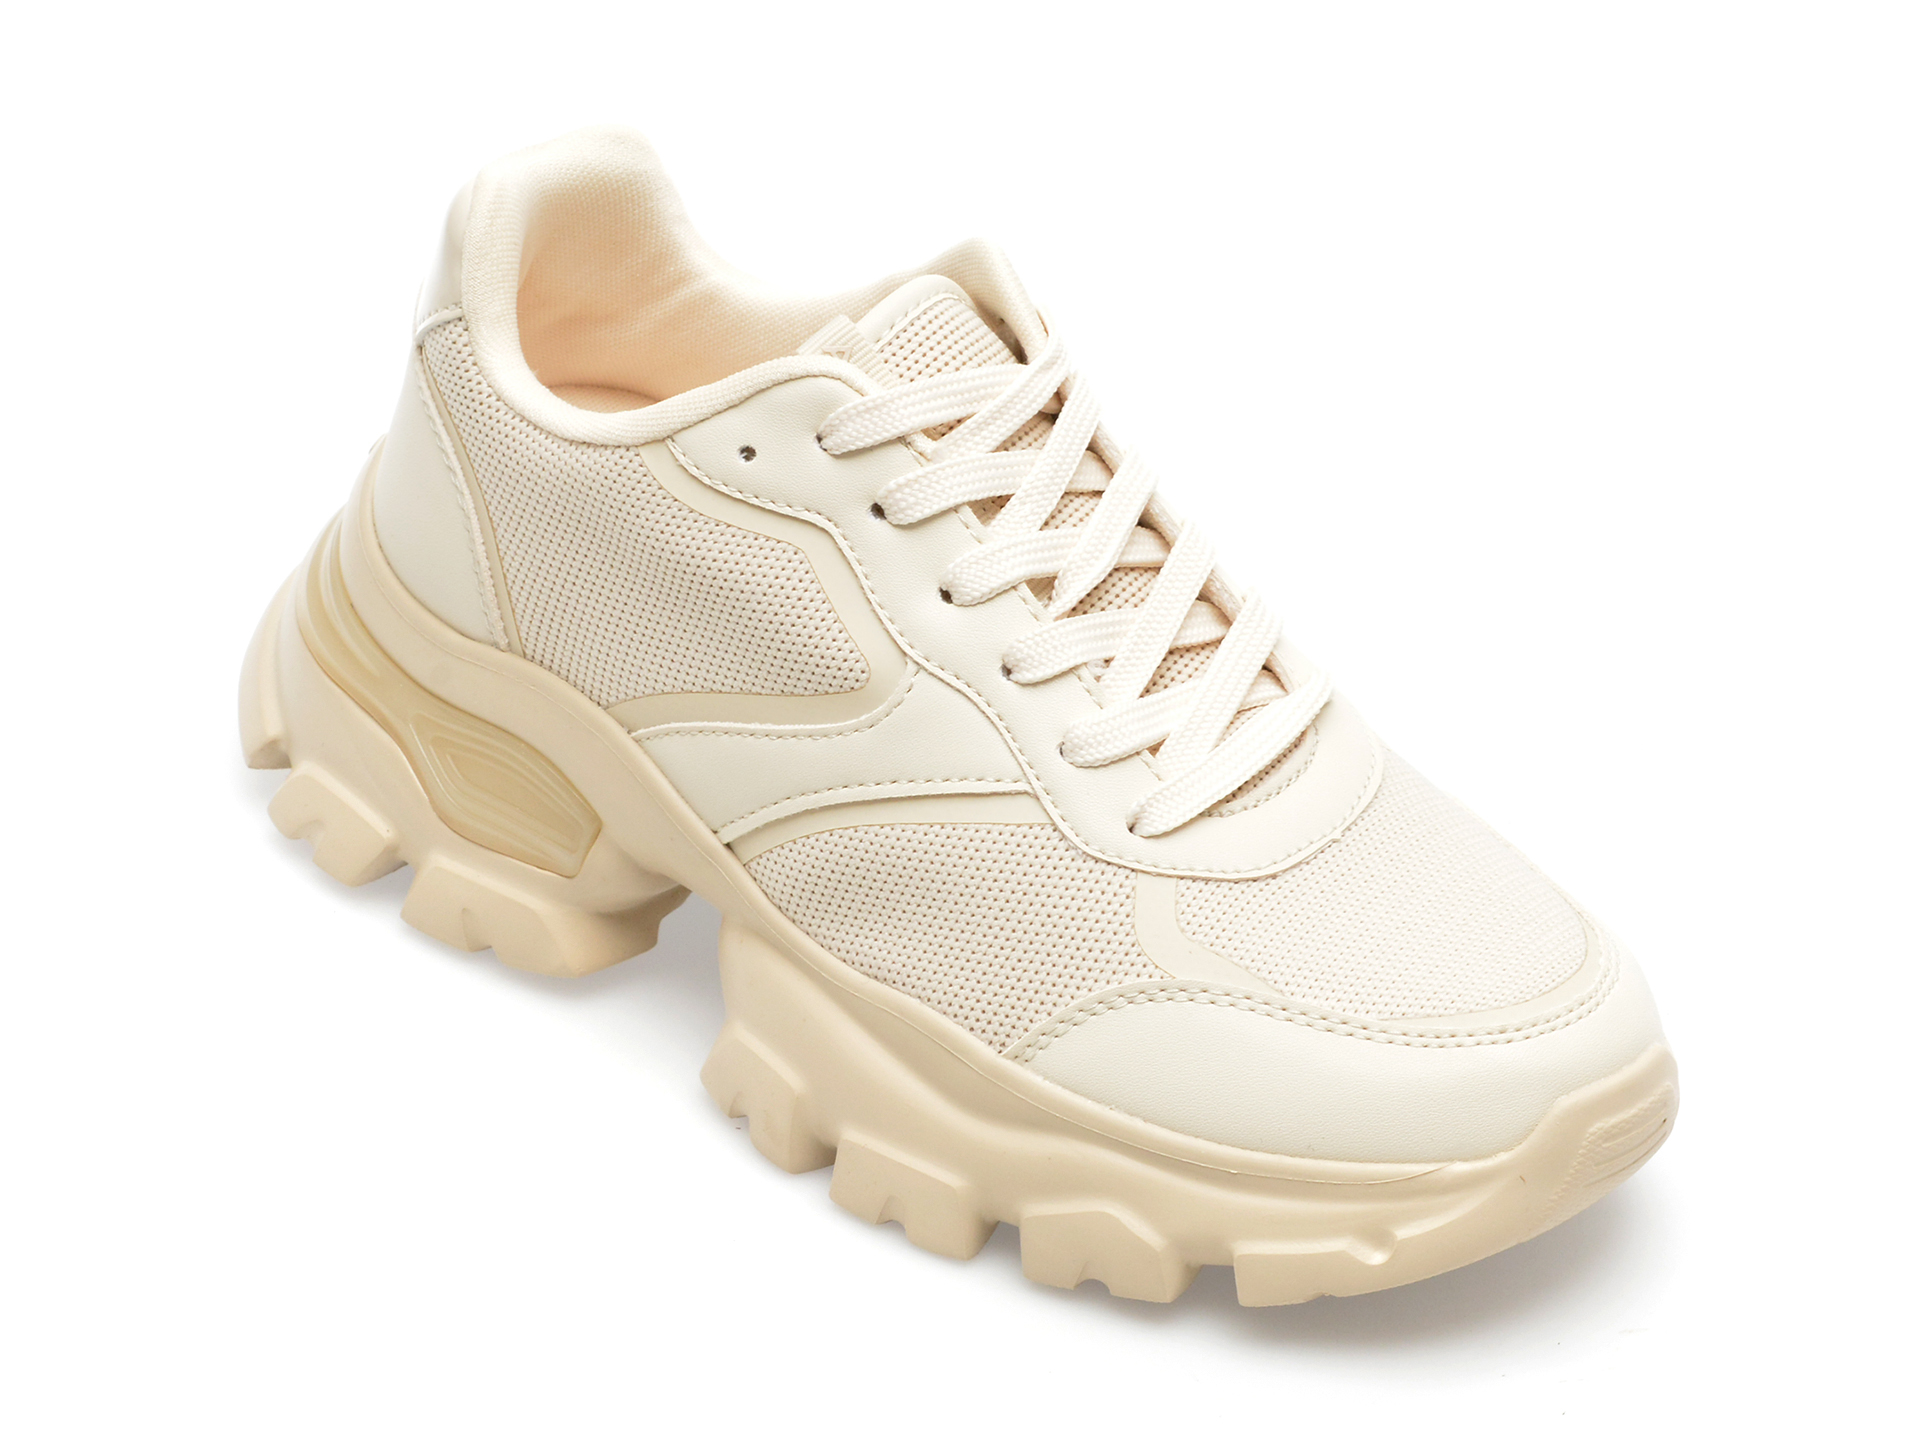 Pantofi ALDO argintii, ENZIA972, din material textil si piele ecologica